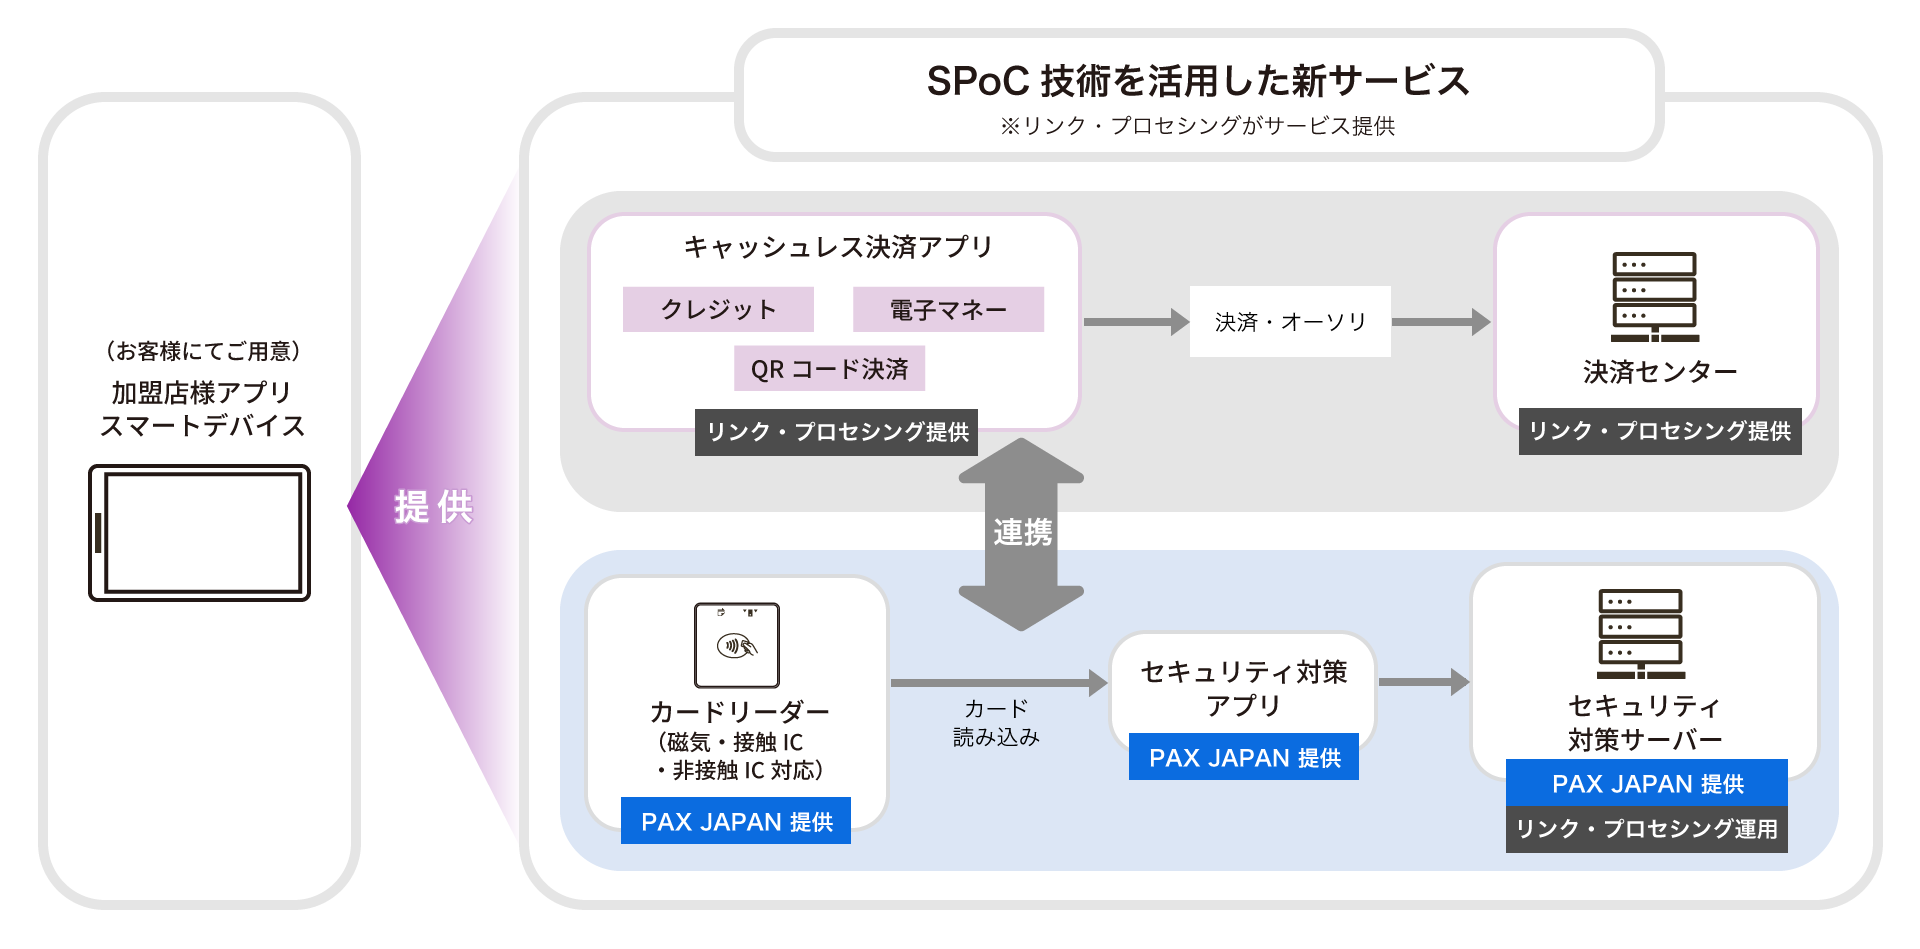 SPoC技術を活用した新サービスの構成イメージ